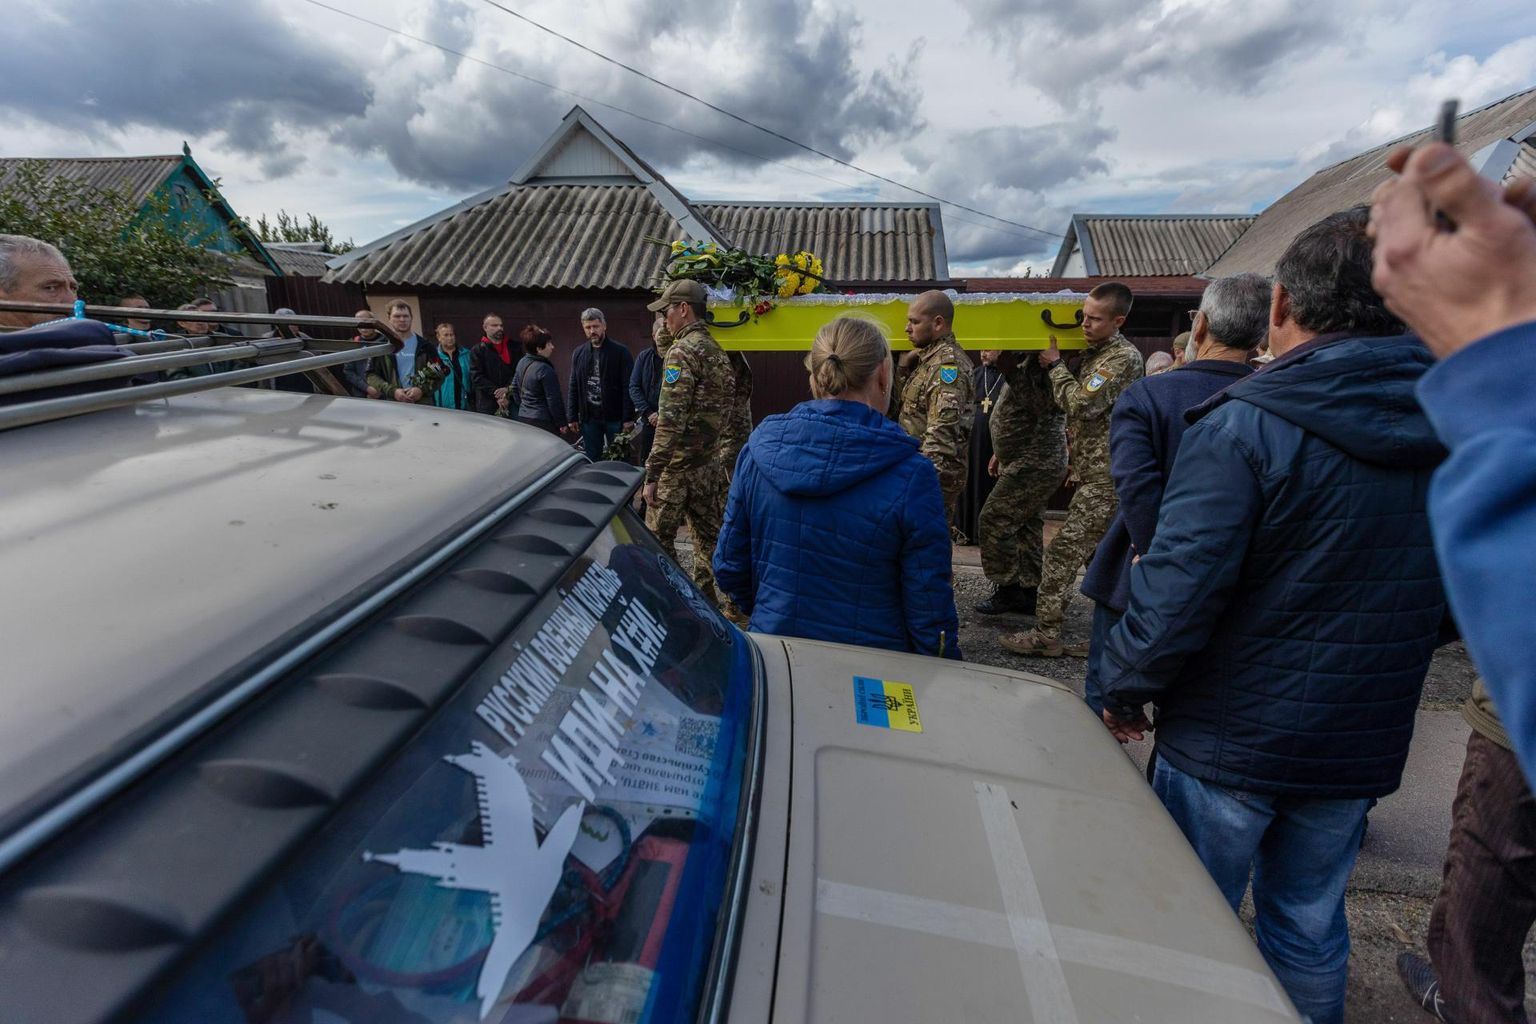 Ukraina sõdurid viimas langenud kaaslast Vladimir Linskit tema kodumajast laupäeval viimsele teekonnale. Maja ees seisval sõiduautol paistab kiri, mis saadab Vene sõjalaeva kõigile tuntud kohta.